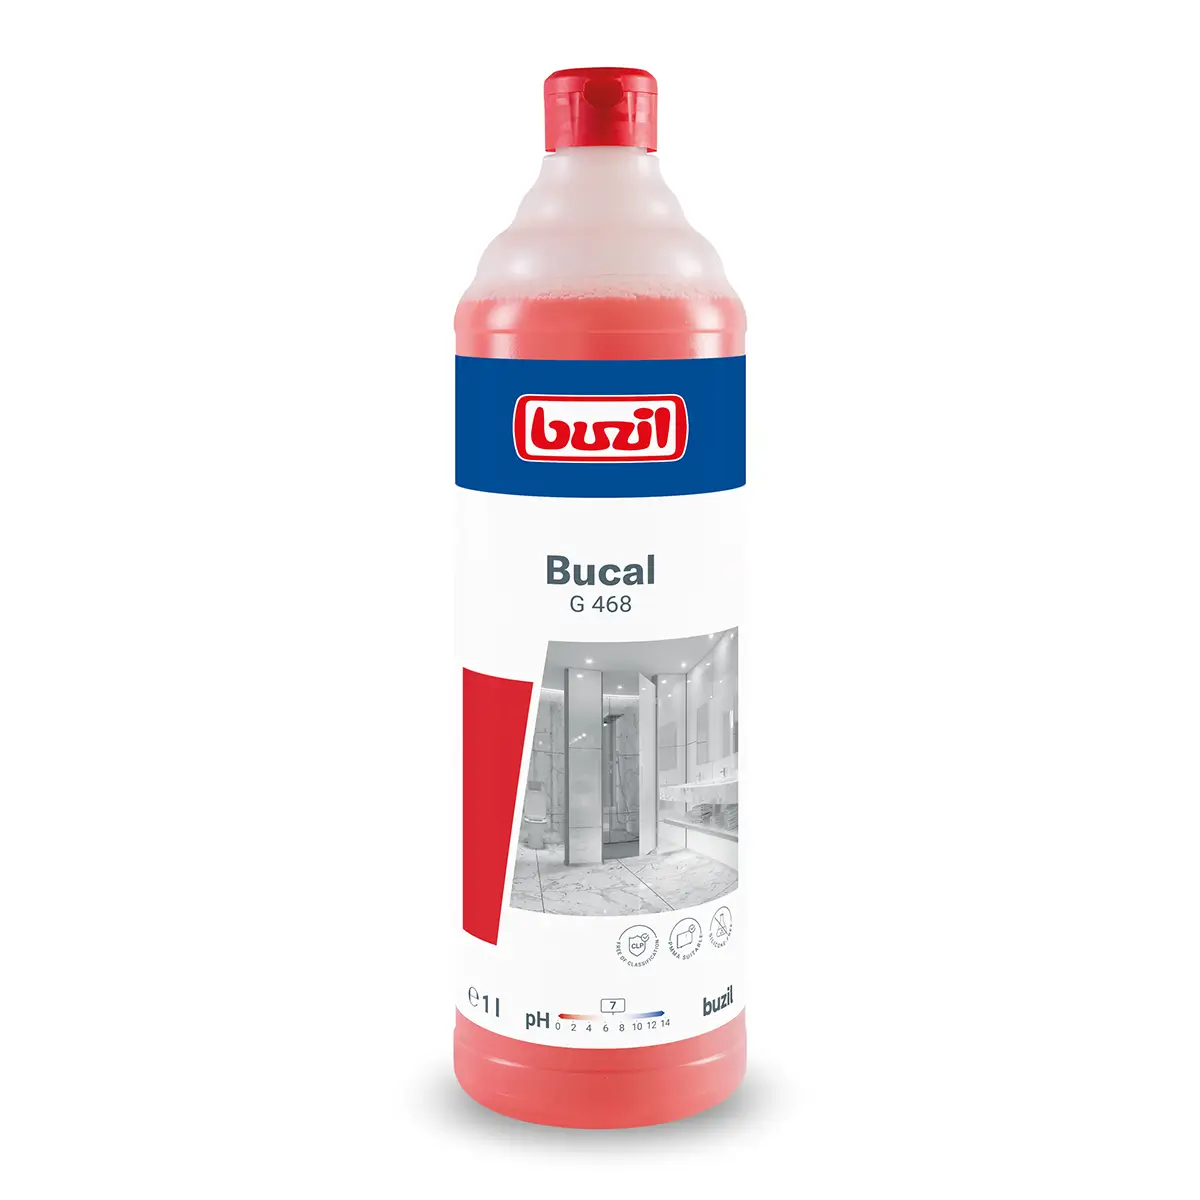 Buzil Bucal G468 säurefreier Sanitärunterhaltsreiniger 1l